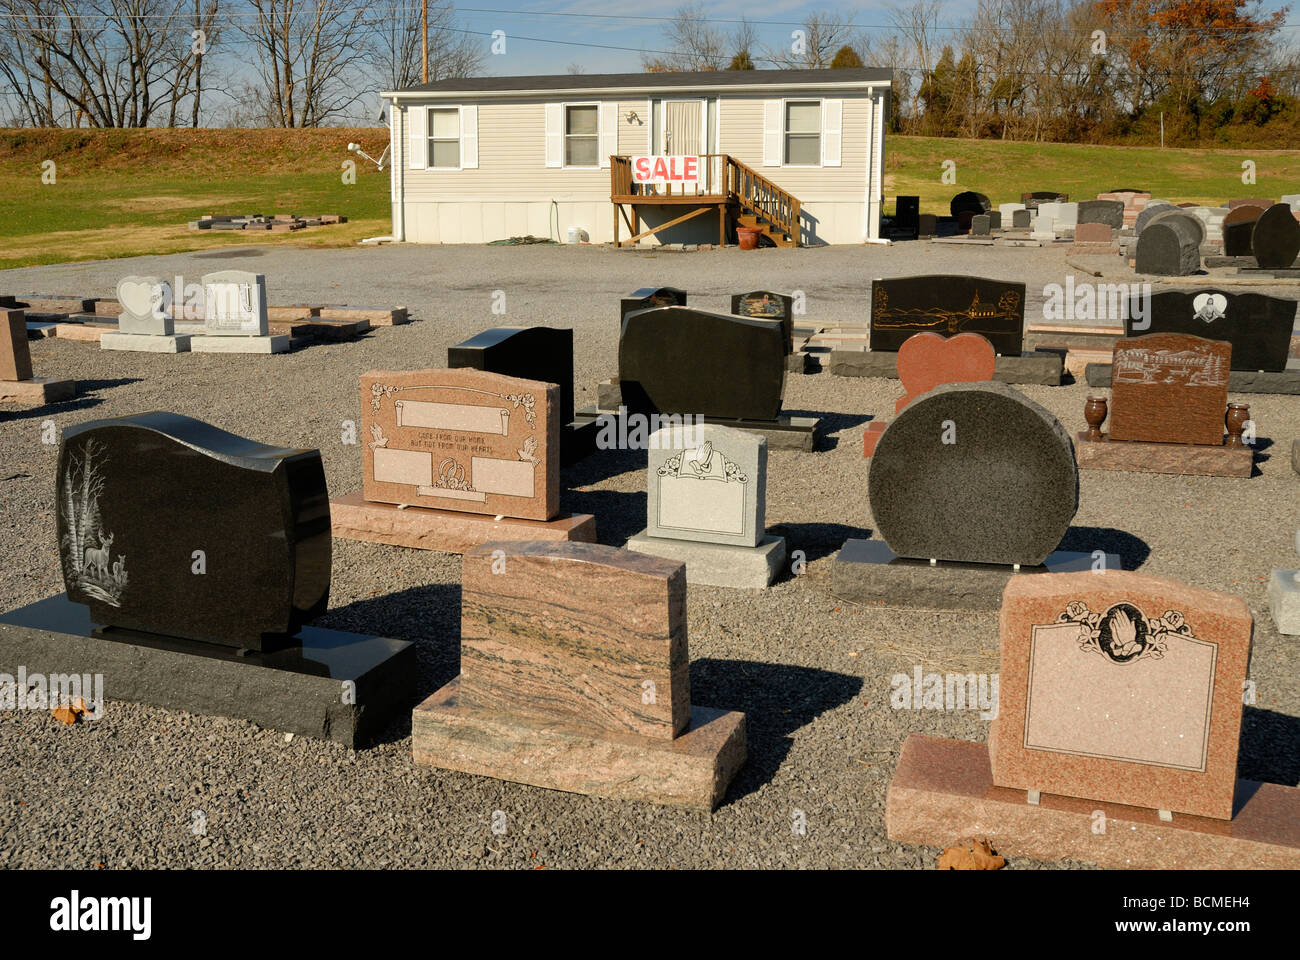 Grabsteine auf Verkauf im lokalen Grabstein Verkauf Haus. Foto von Darrell  Young Stockfotografie - Alamy